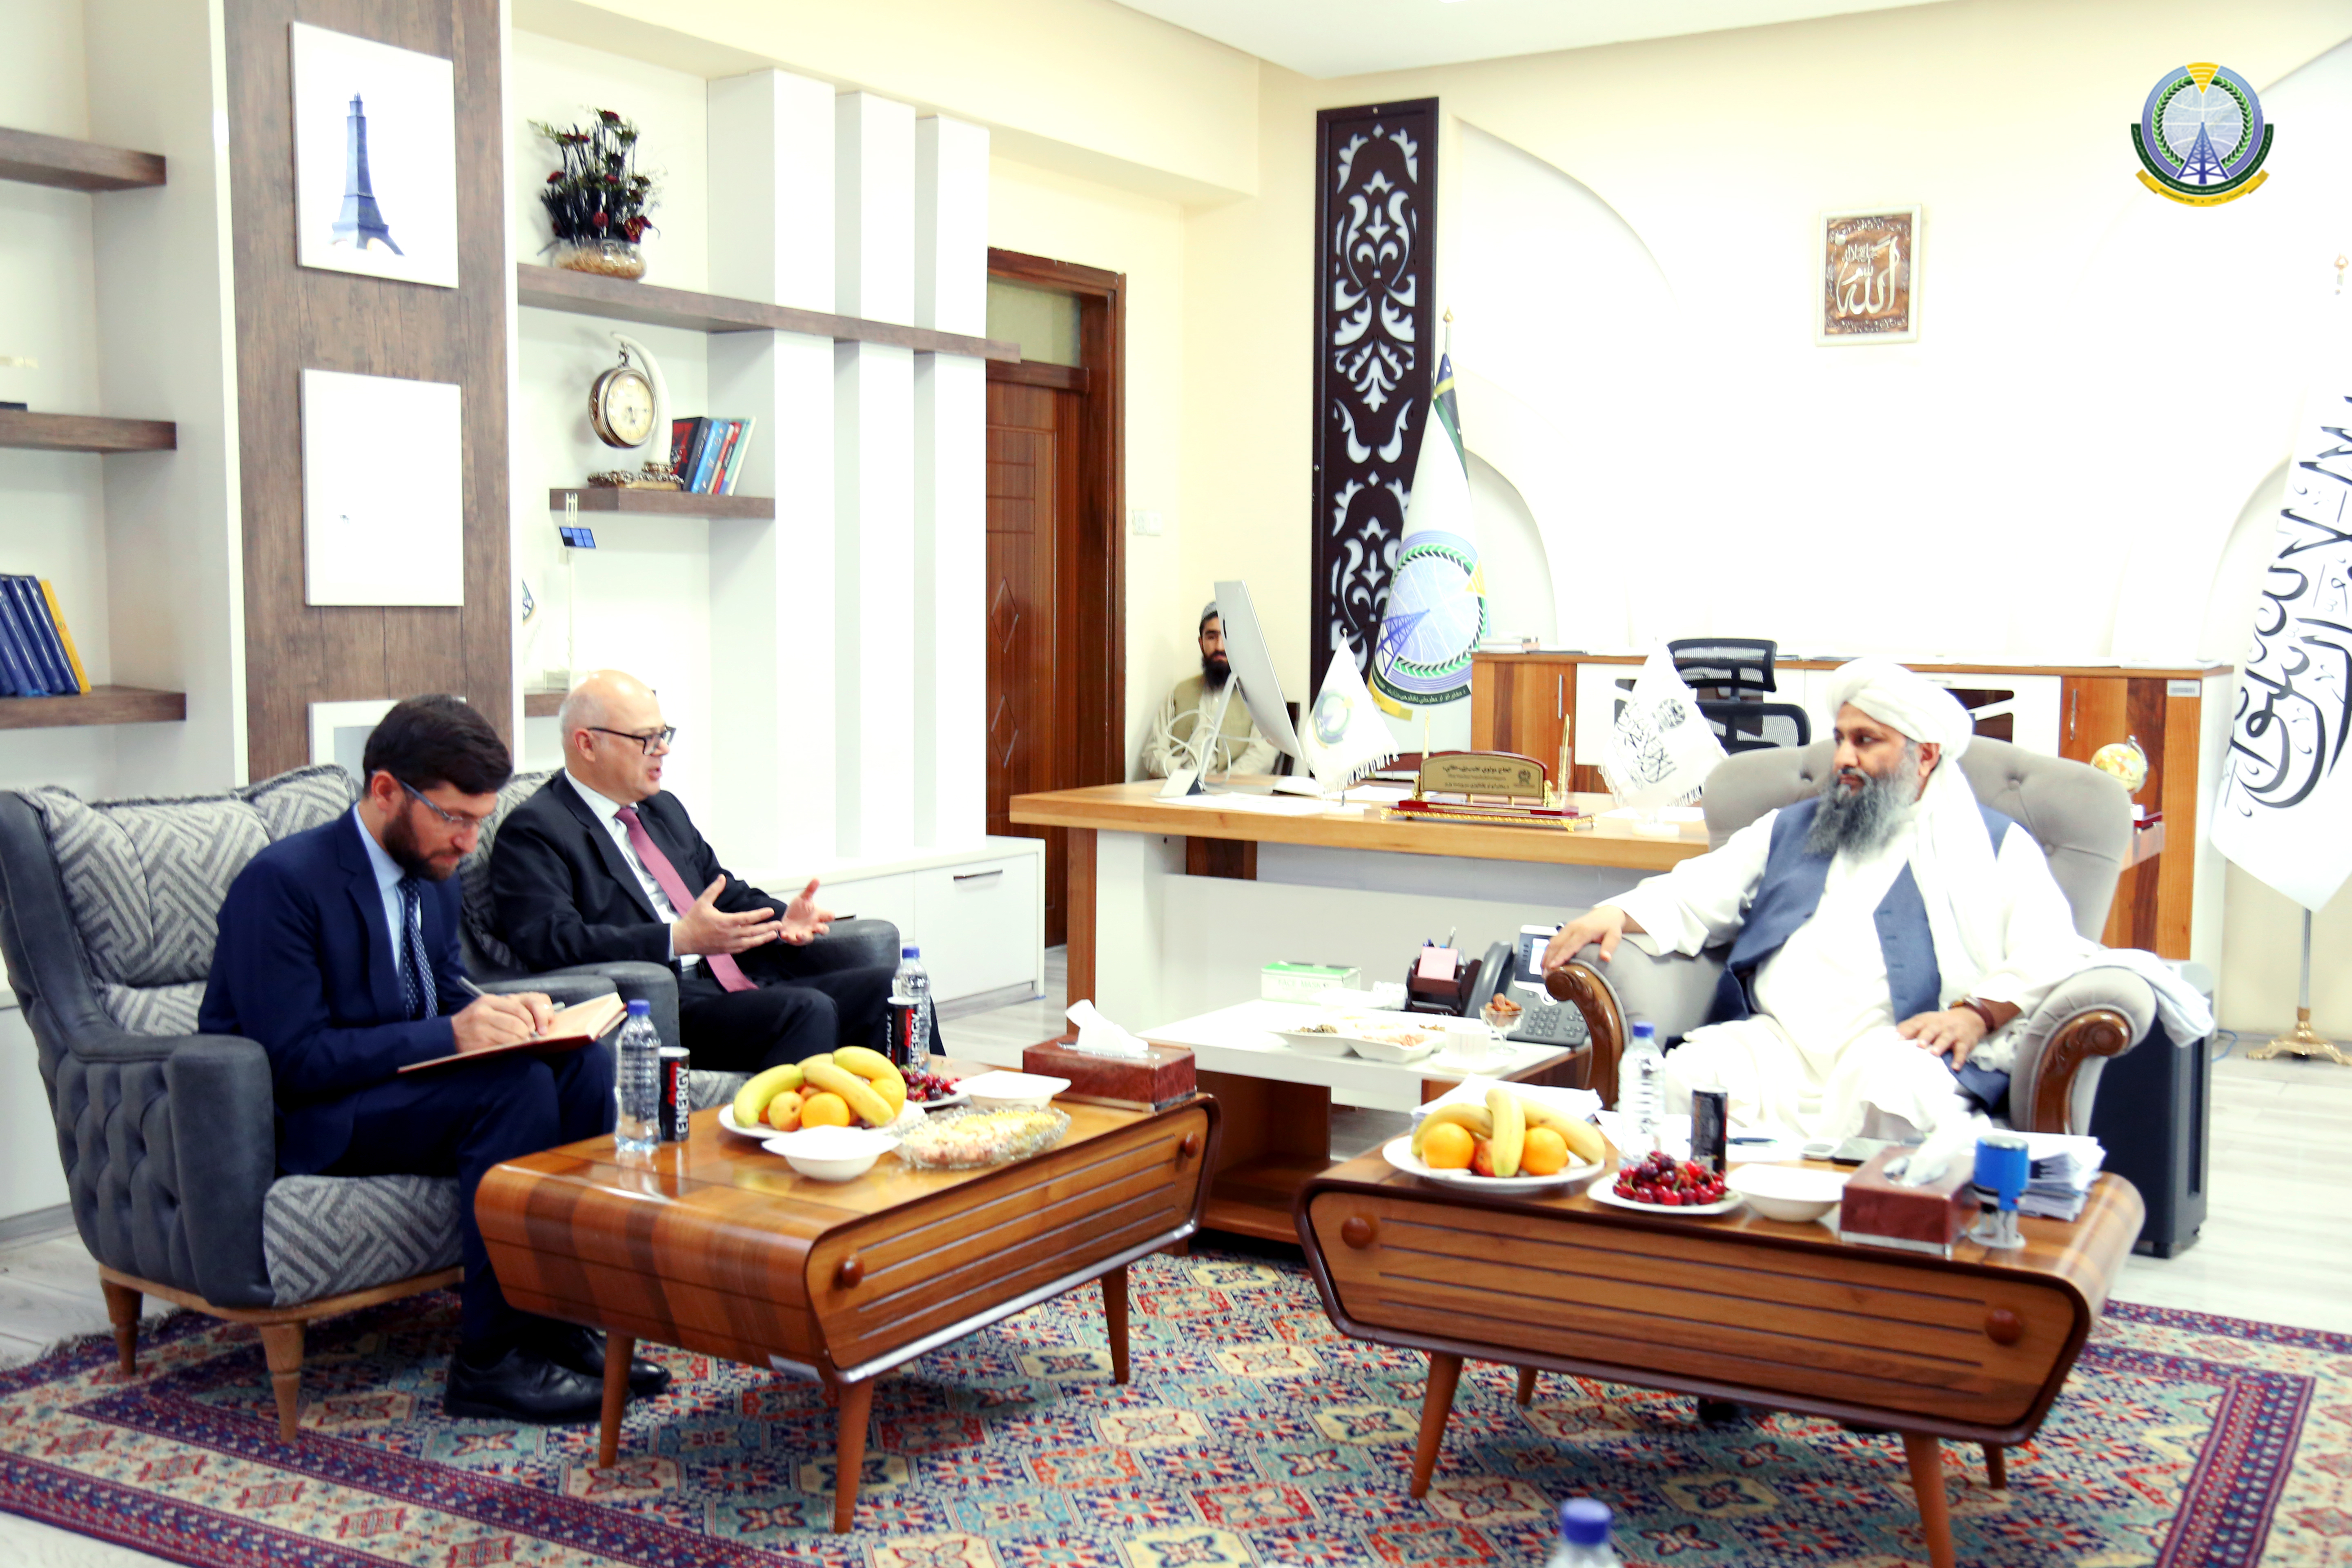 محترم جهاد ارگینای سفیر ترکیه در کابل و هیئت همراهش با مولوی نجیب الله حقانی سرپرست وزارت مخابرات و تکنالوژی معلوماتی در دفتر کاری وی دیدار کردند